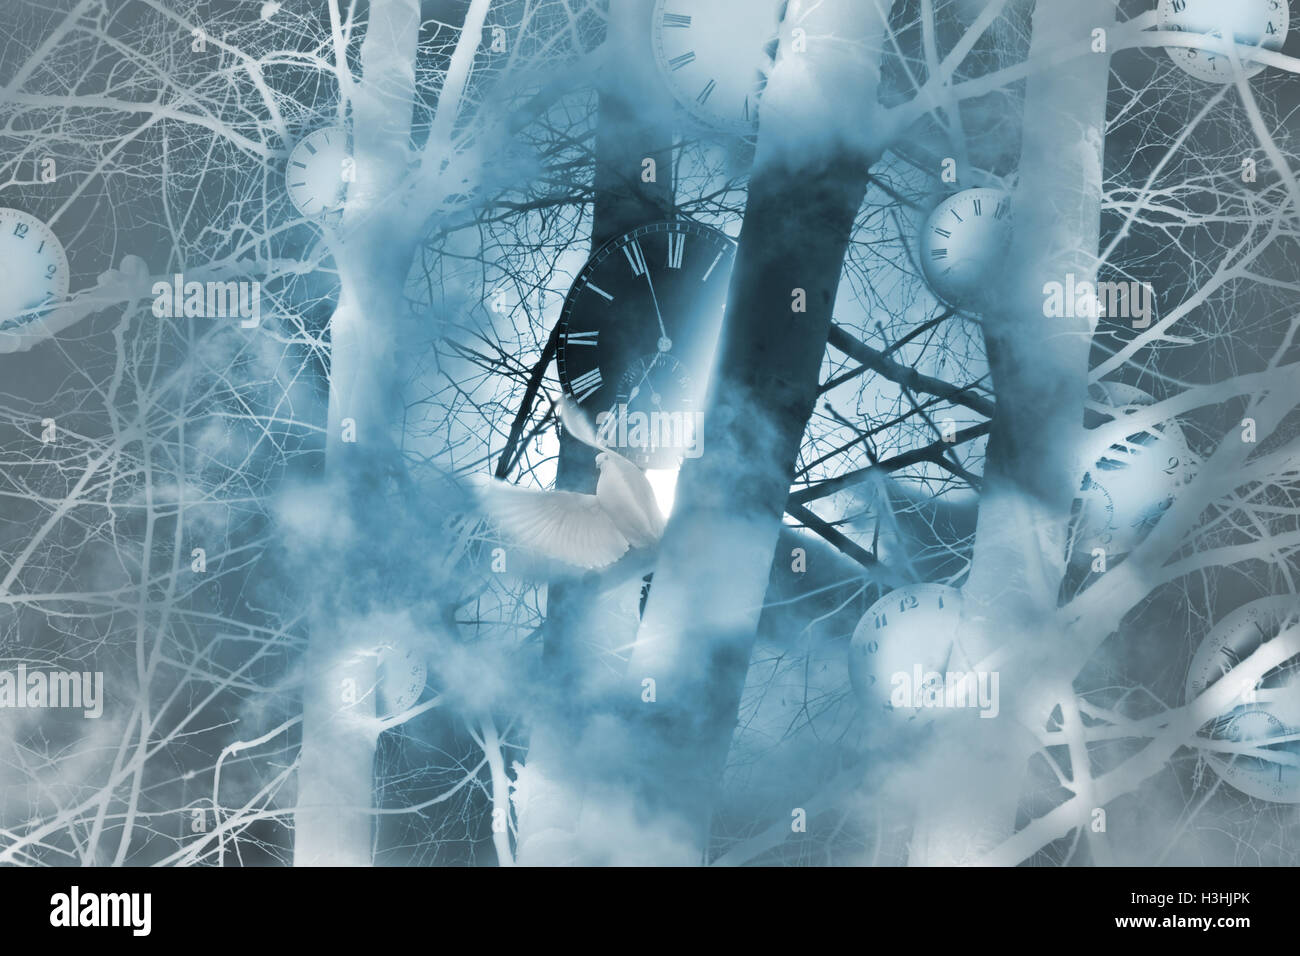 Concept de temps mystique dont l'horloge sans aiguilles, debout entre les brindilles en forêt brumeuse et un noir à proximité d'une colombe blanche. Banque D'Images